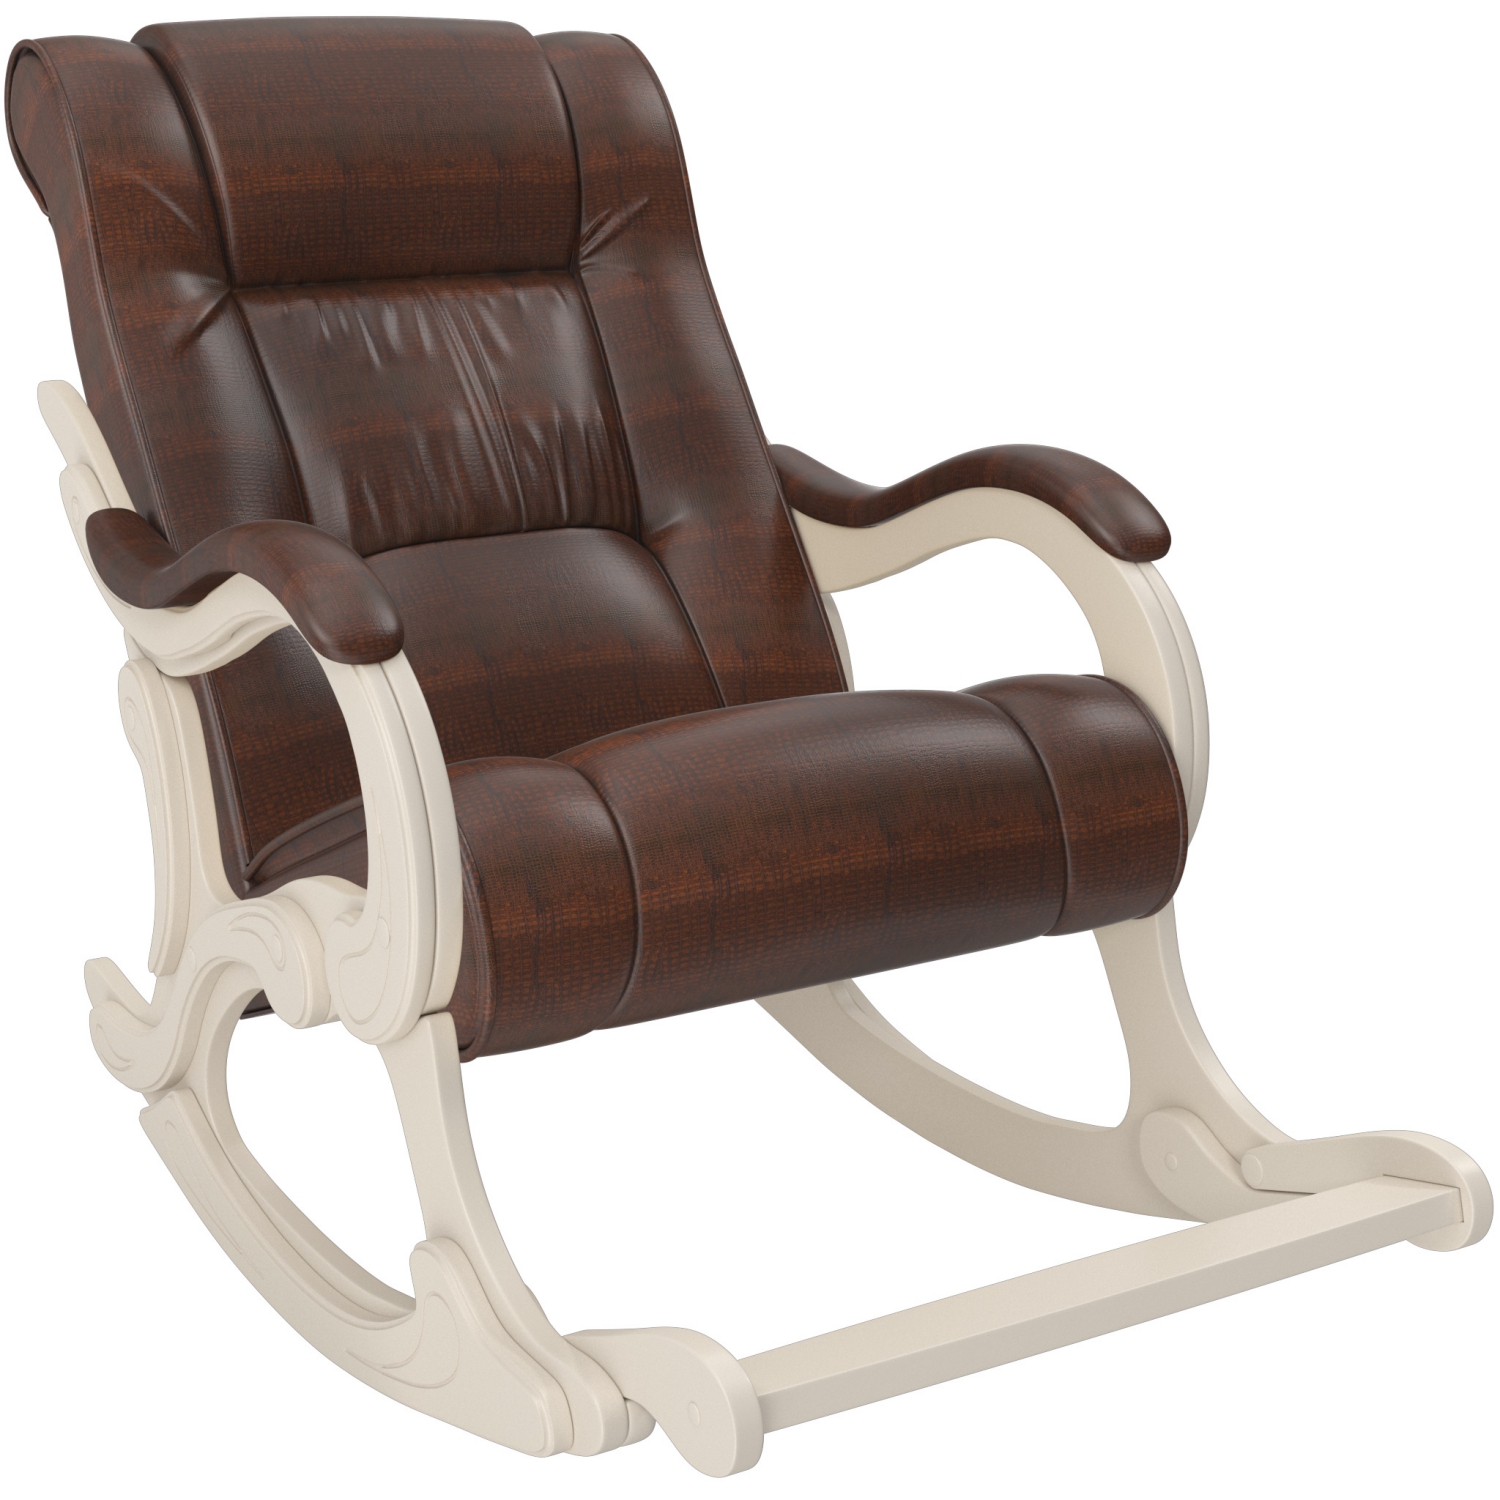 Кресло-качалка с подножкой модель 77 купить в Москве в интернет-магазинеMebelike.ru